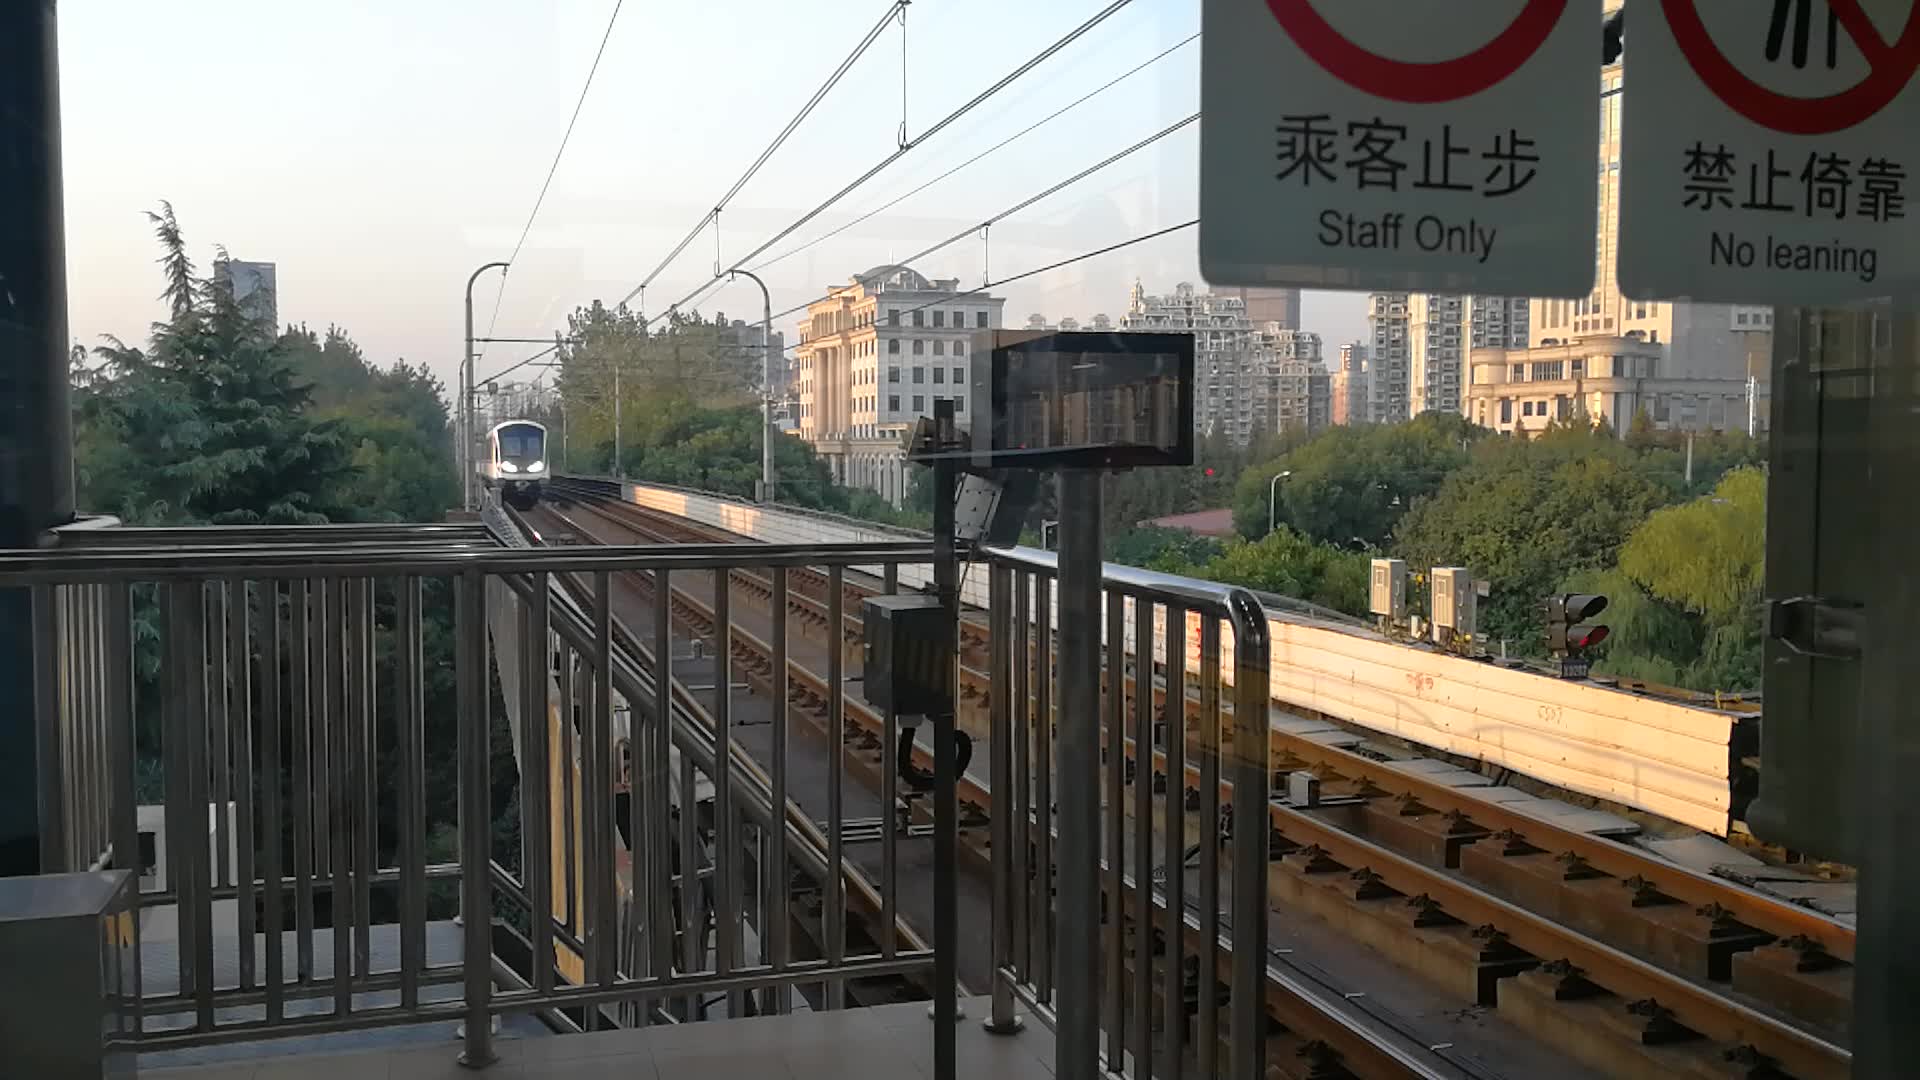 上海地铁上海轨道交通5号线列车进春申路站